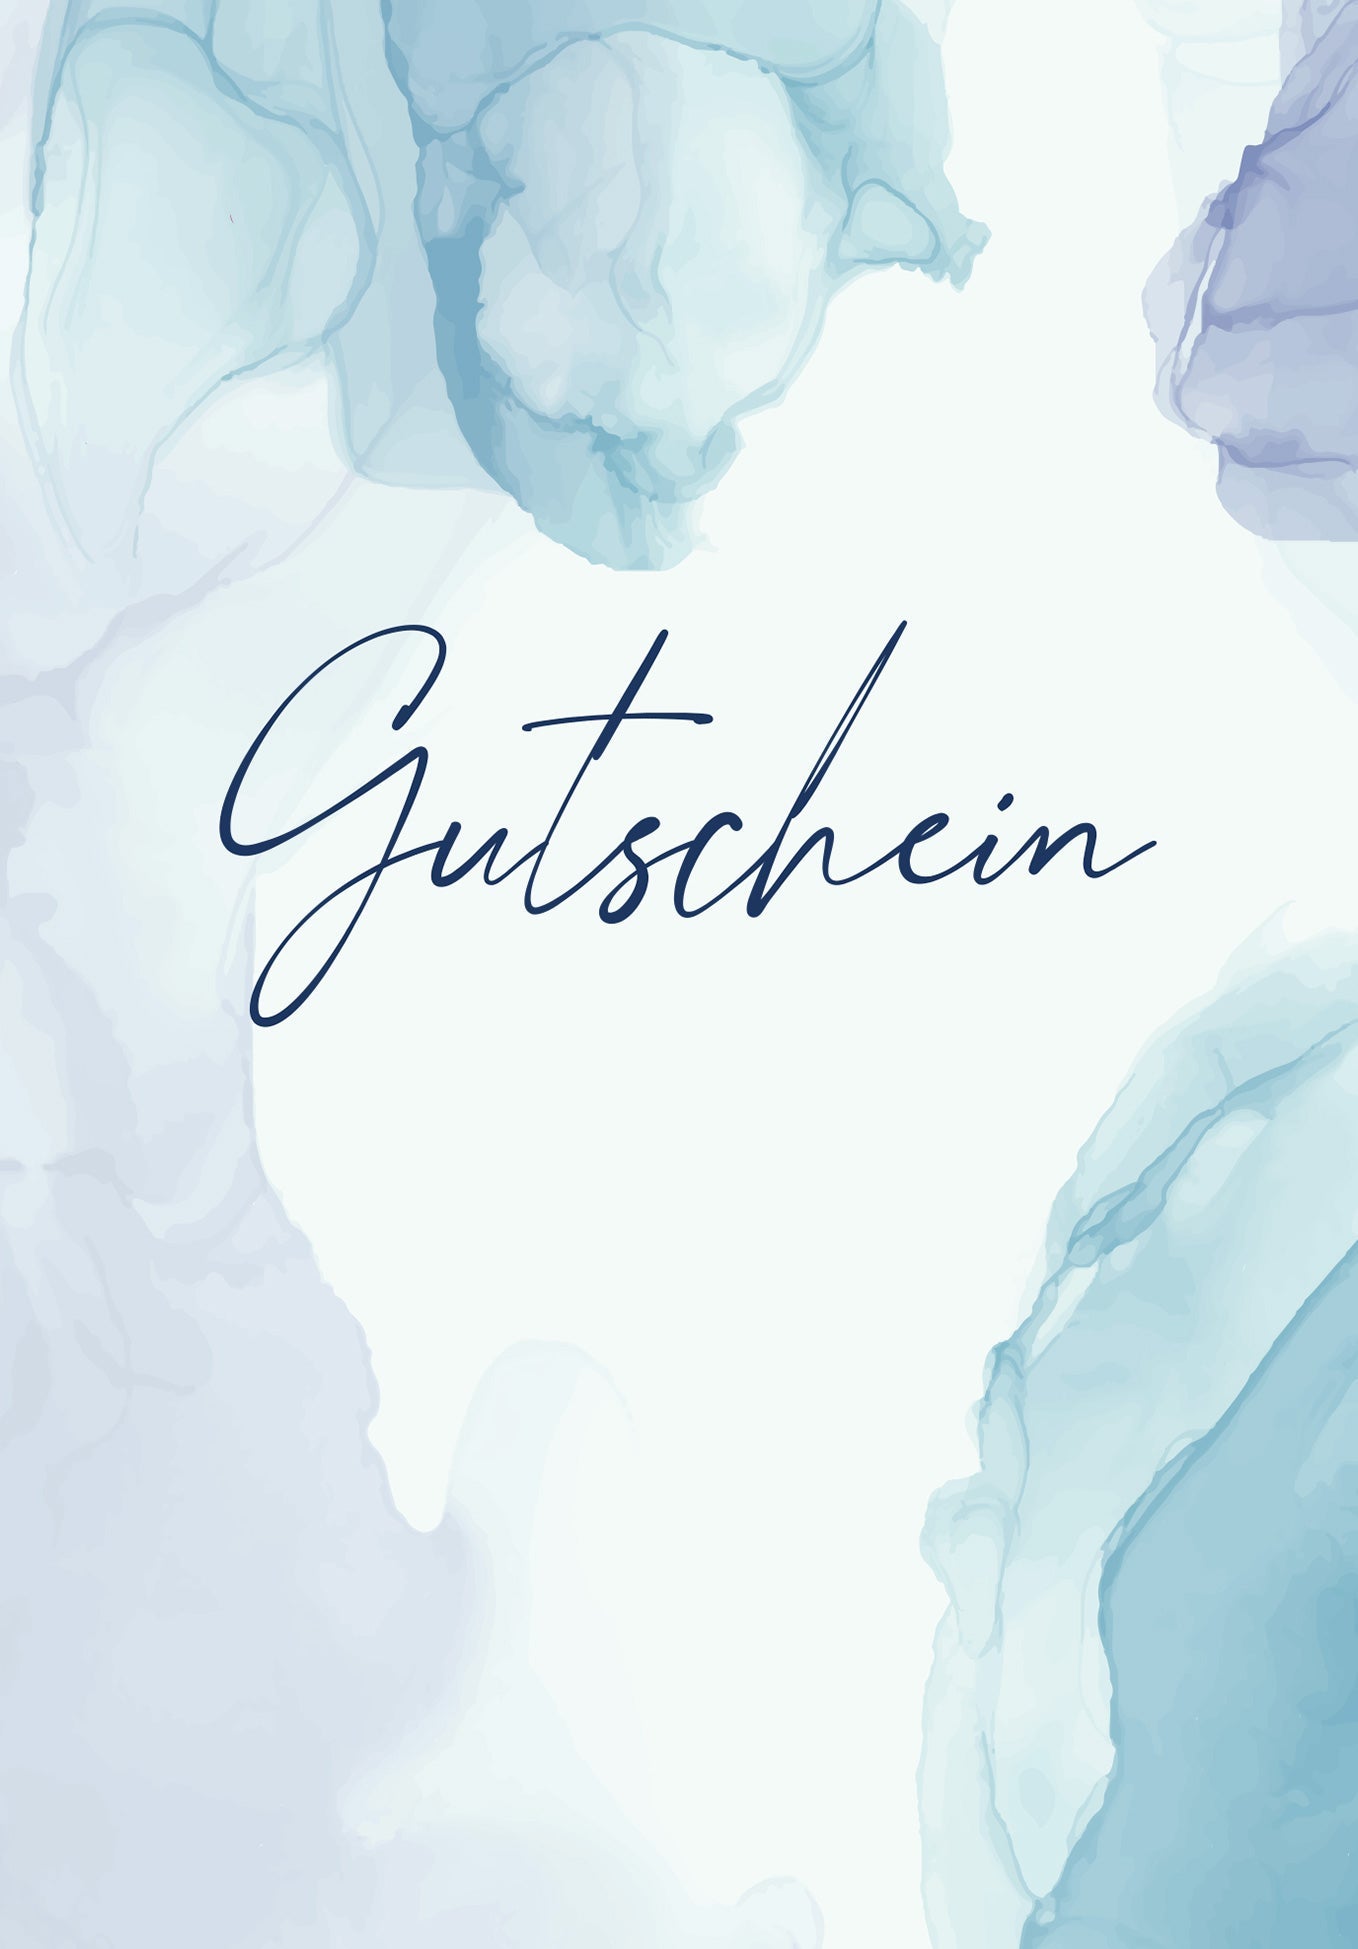 Gutschein - Aquarell Blau Wunschgutschein